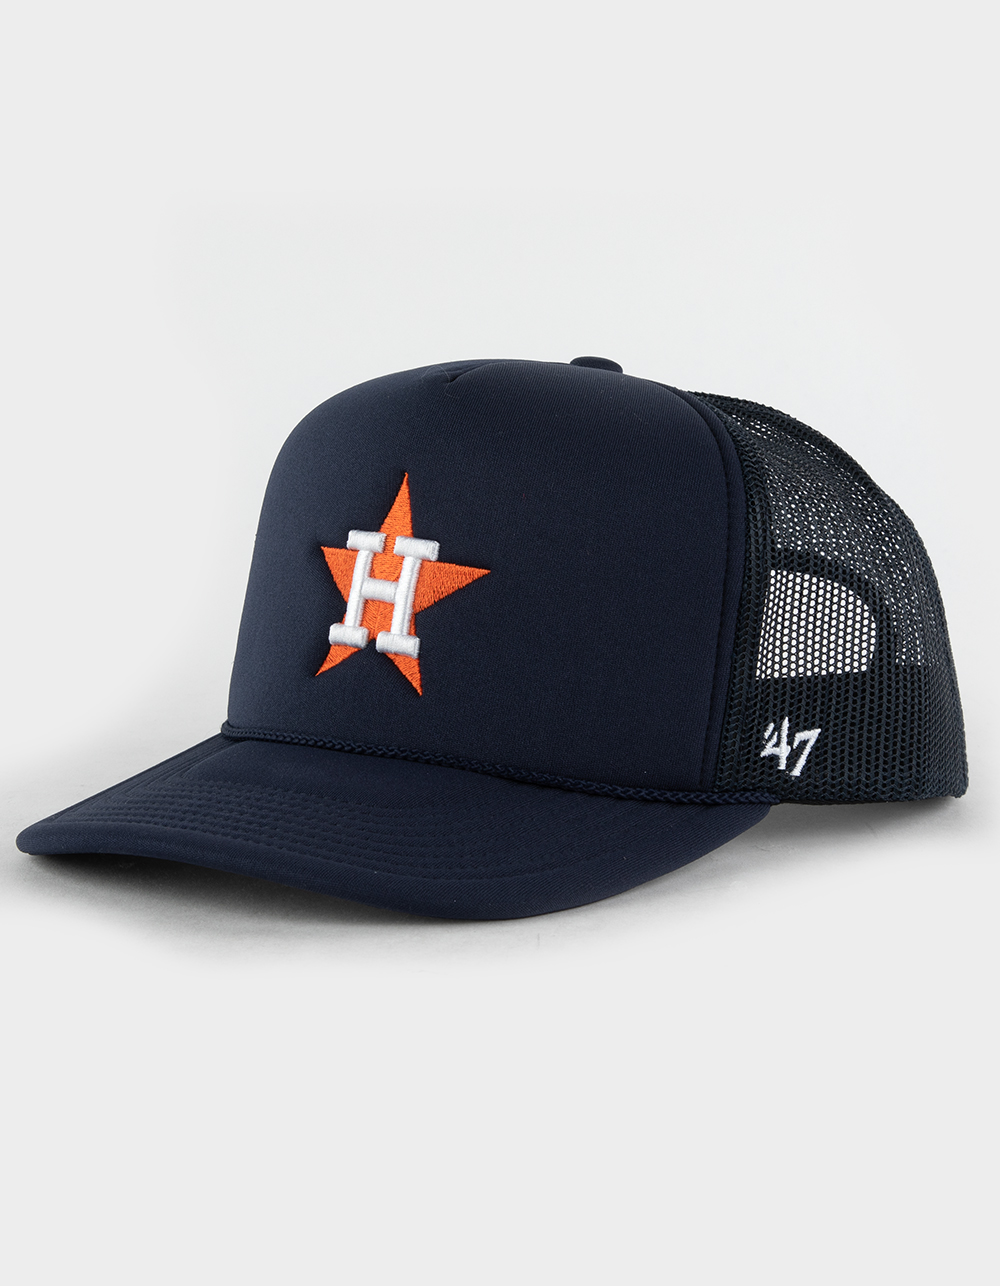 47 Brand Houston Astros Cooperstown Rewind Patch '47 Trucker Hat - Navy/Orange - One Size